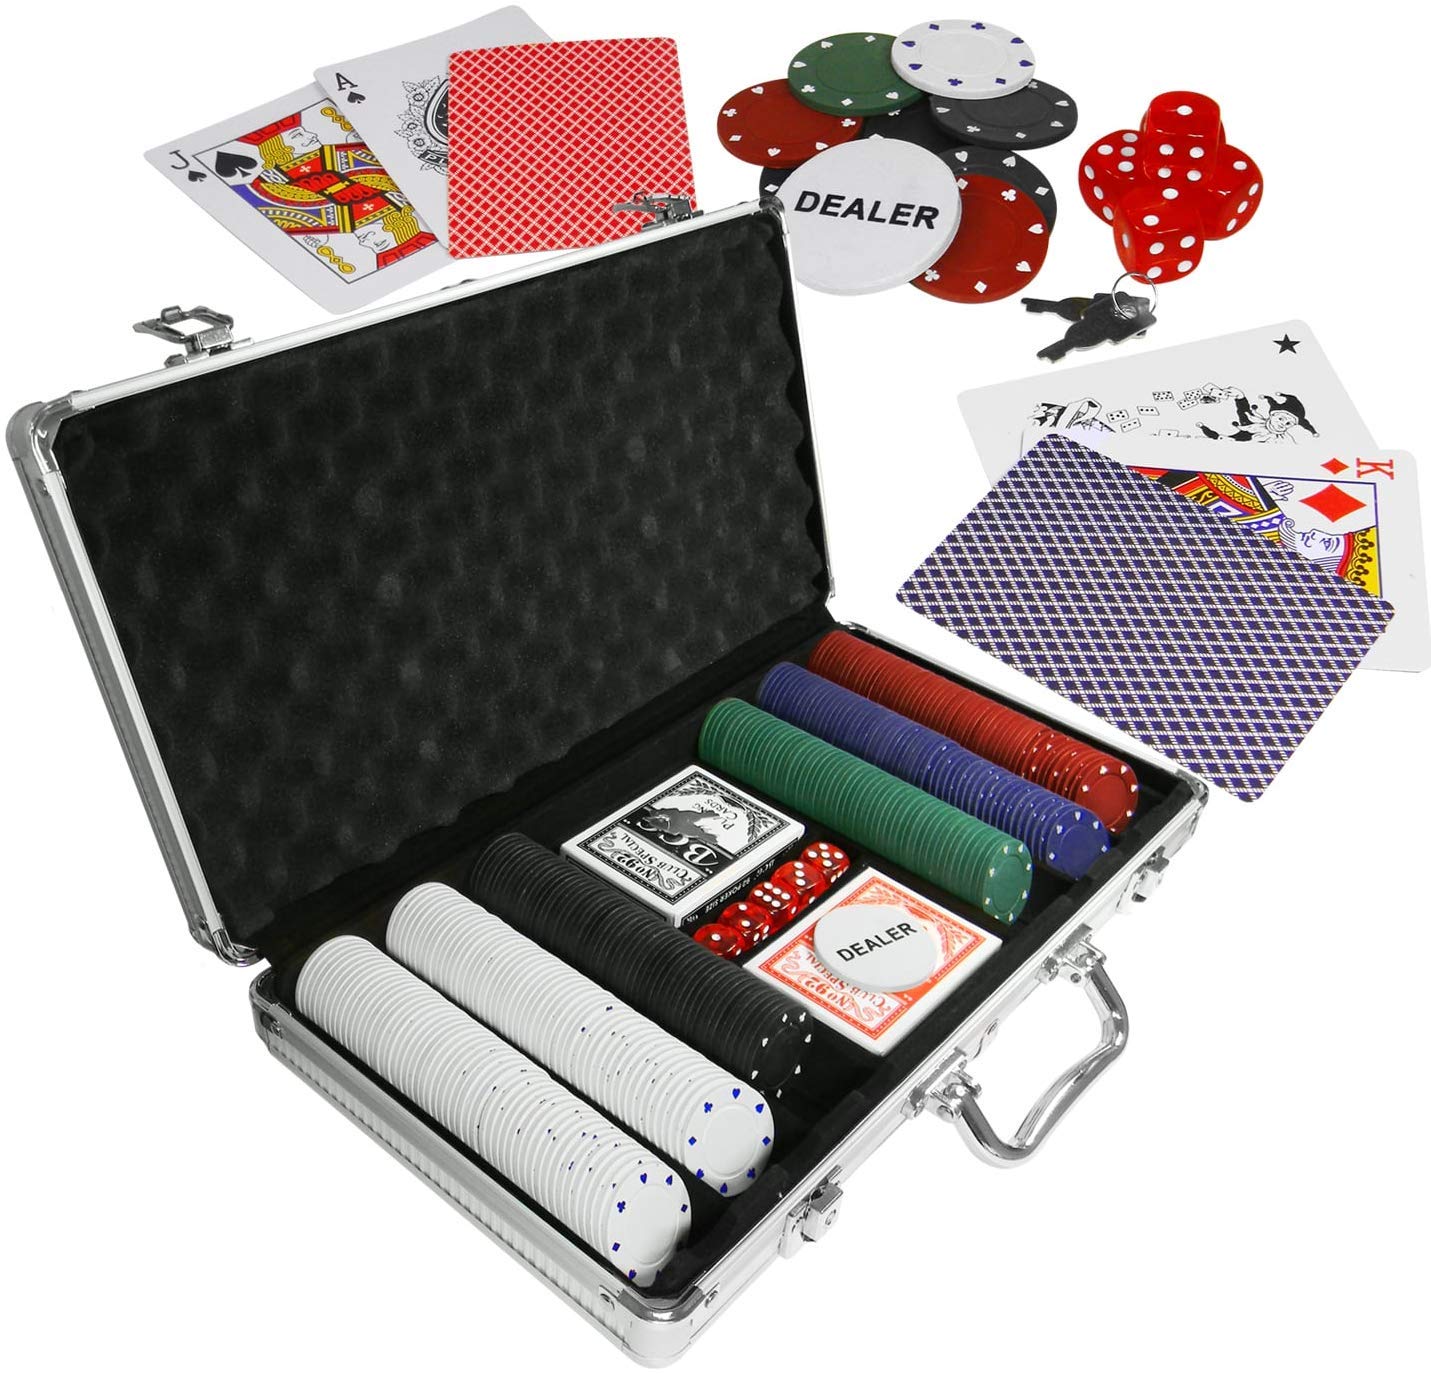 Eaxus® Edles Pokerset im Alukoffer - Pokerkoffer Royal Flush 300 Chips, inkl. Kartendecks